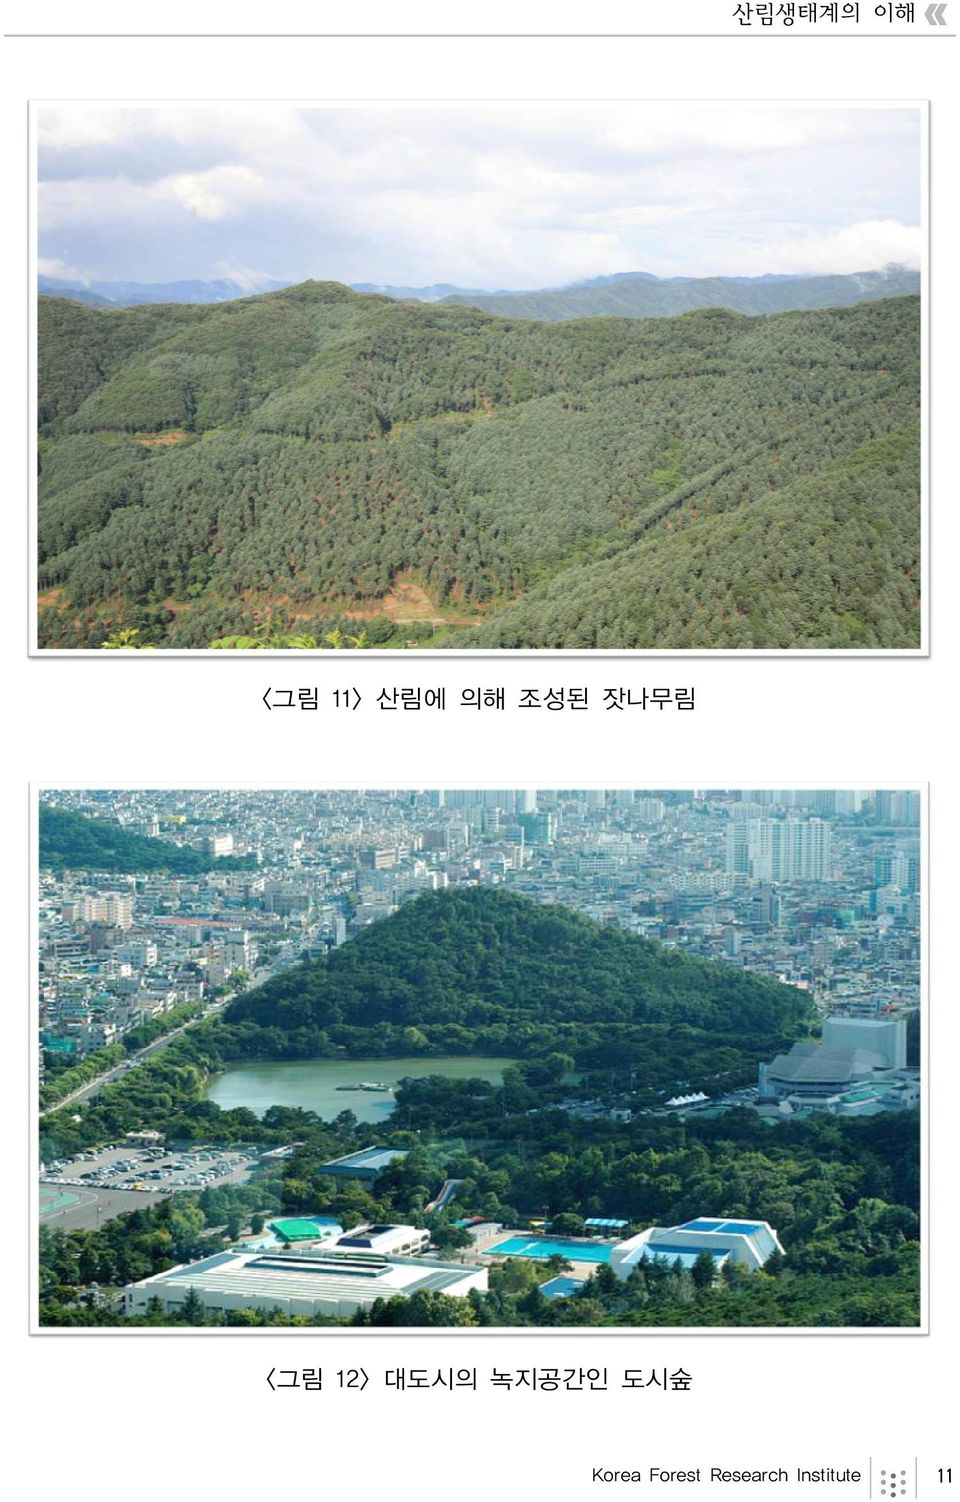 대도시의 녹지공간인 도시숲 Korea